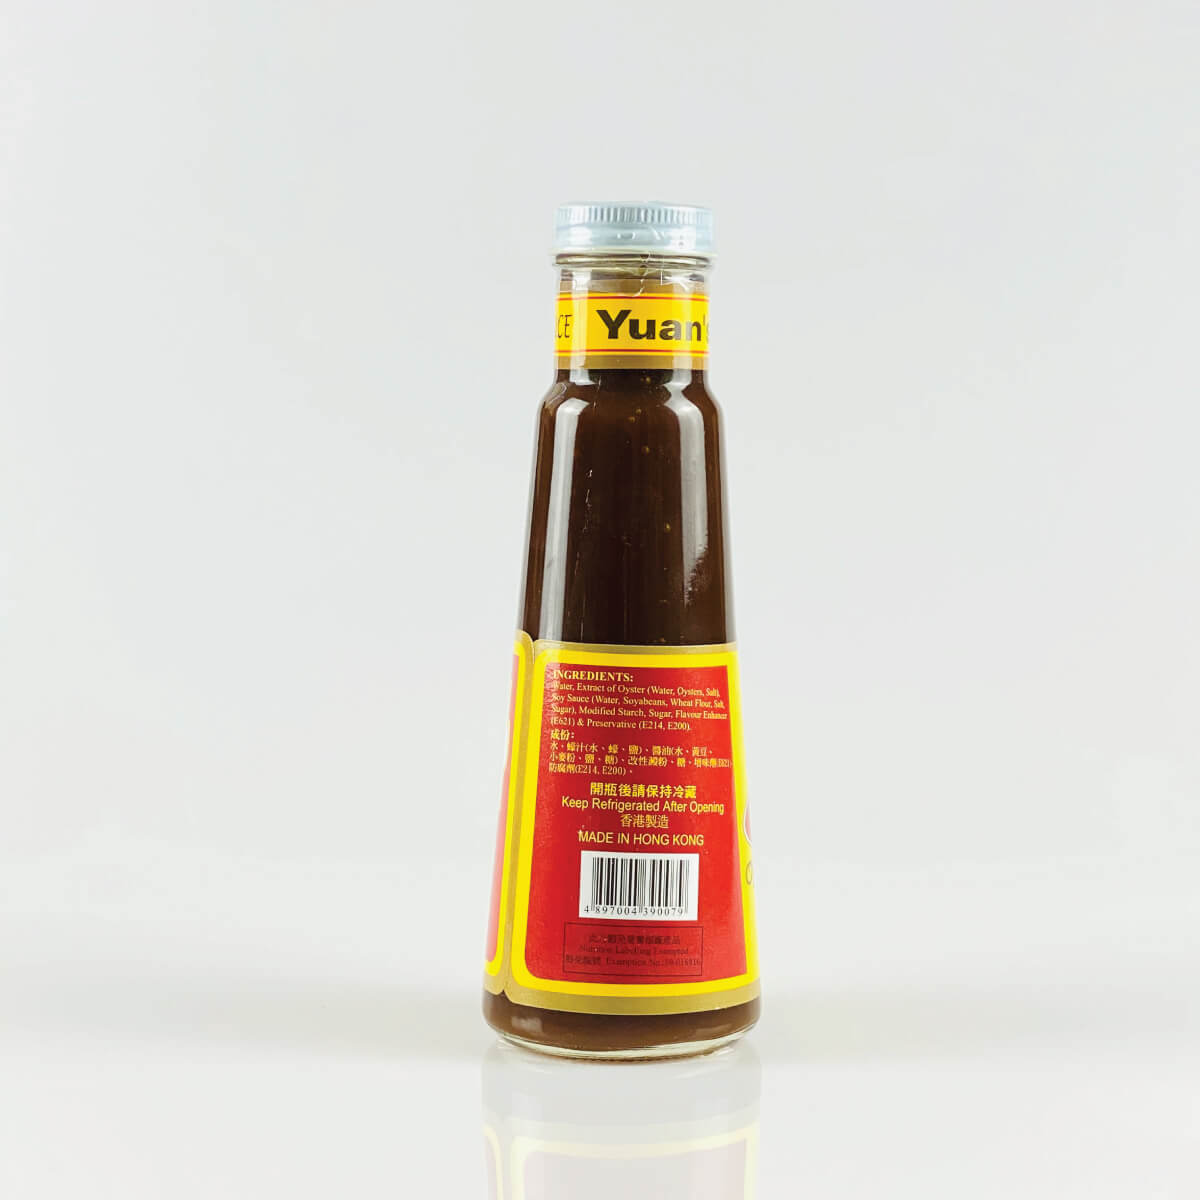 頤和園醬油 優質蠔油 YUAN'S PREMIUM OYSTER SAUCE 250ml (not made from oyster extract) Ihoyuan